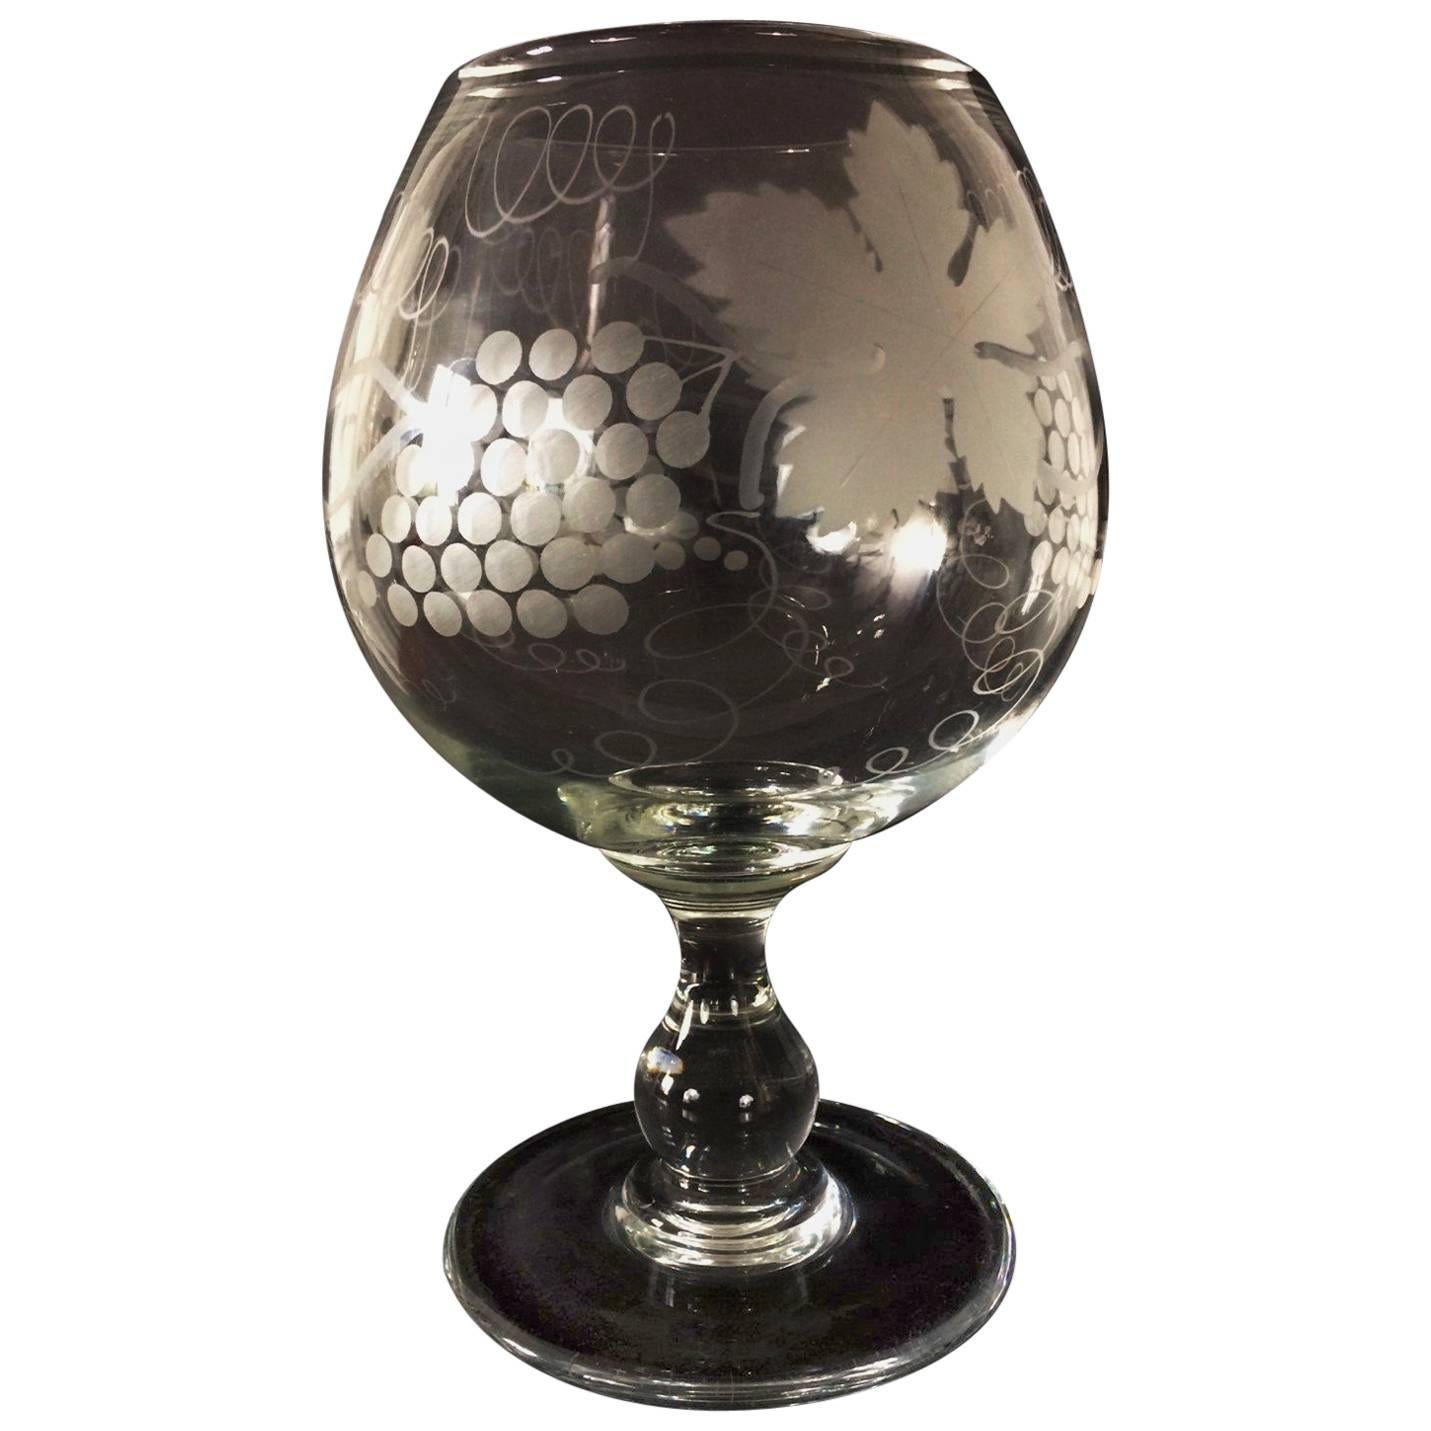 Souffl Rafraichissoir aus mundgeblasenem Glas mit Vines-Dekor  Ende des 19. Jahrhunderts